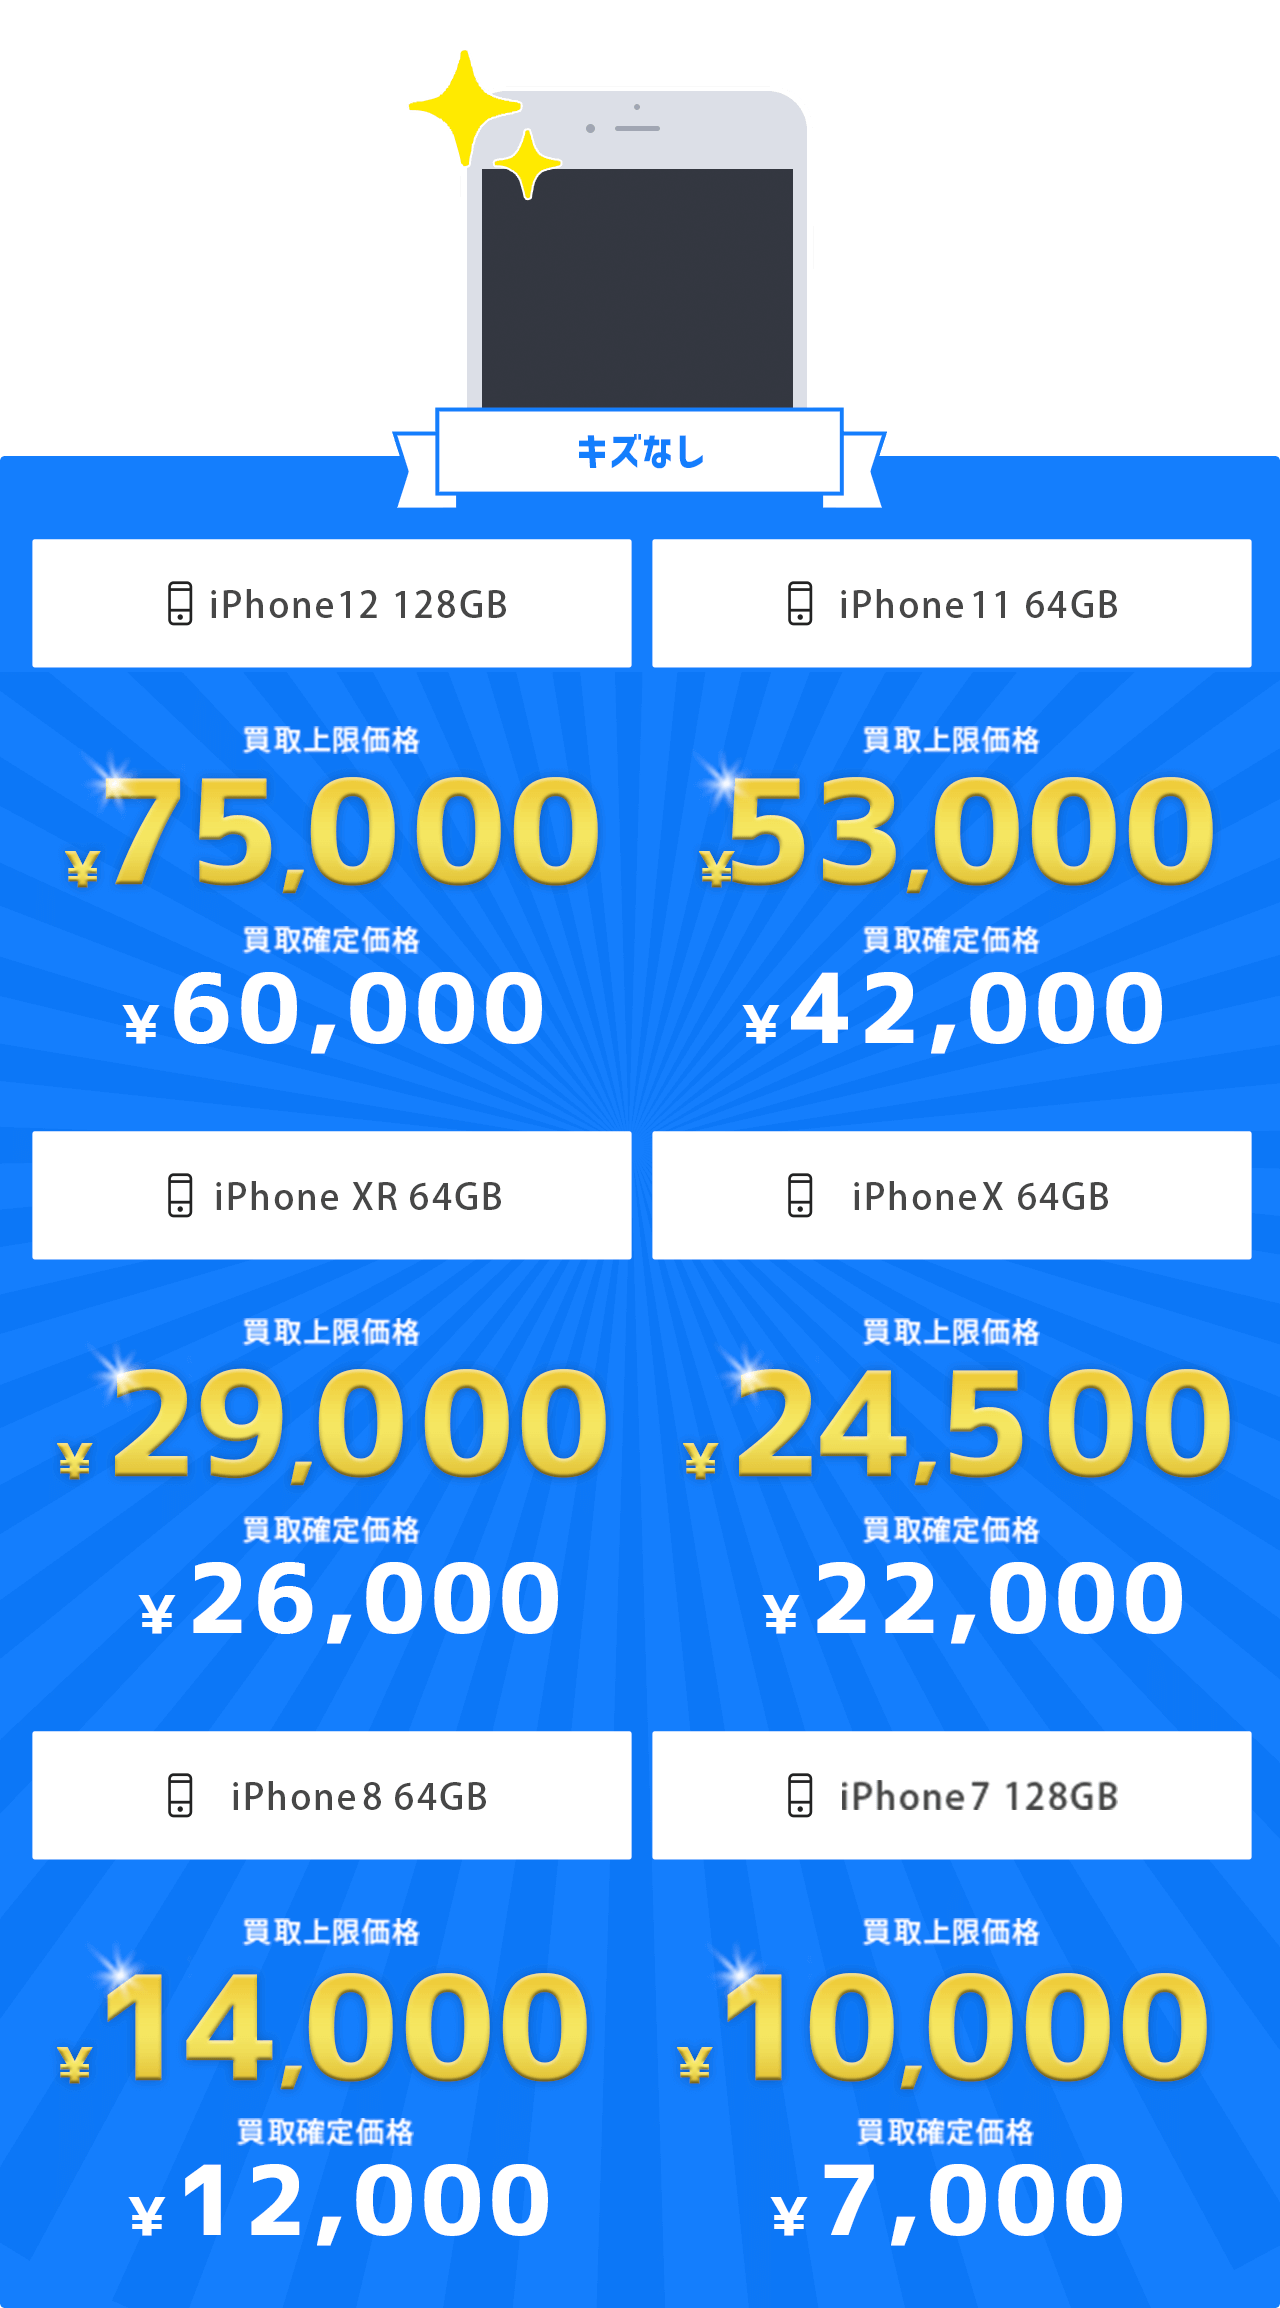 「キズなし」上限買取価格[iPhone 11 64GB]￥42,000 [iPhone XR 64GB]￥26,000 [iPhone X 64GB]￥22,000 [iPhone8 64GB]￥12,000